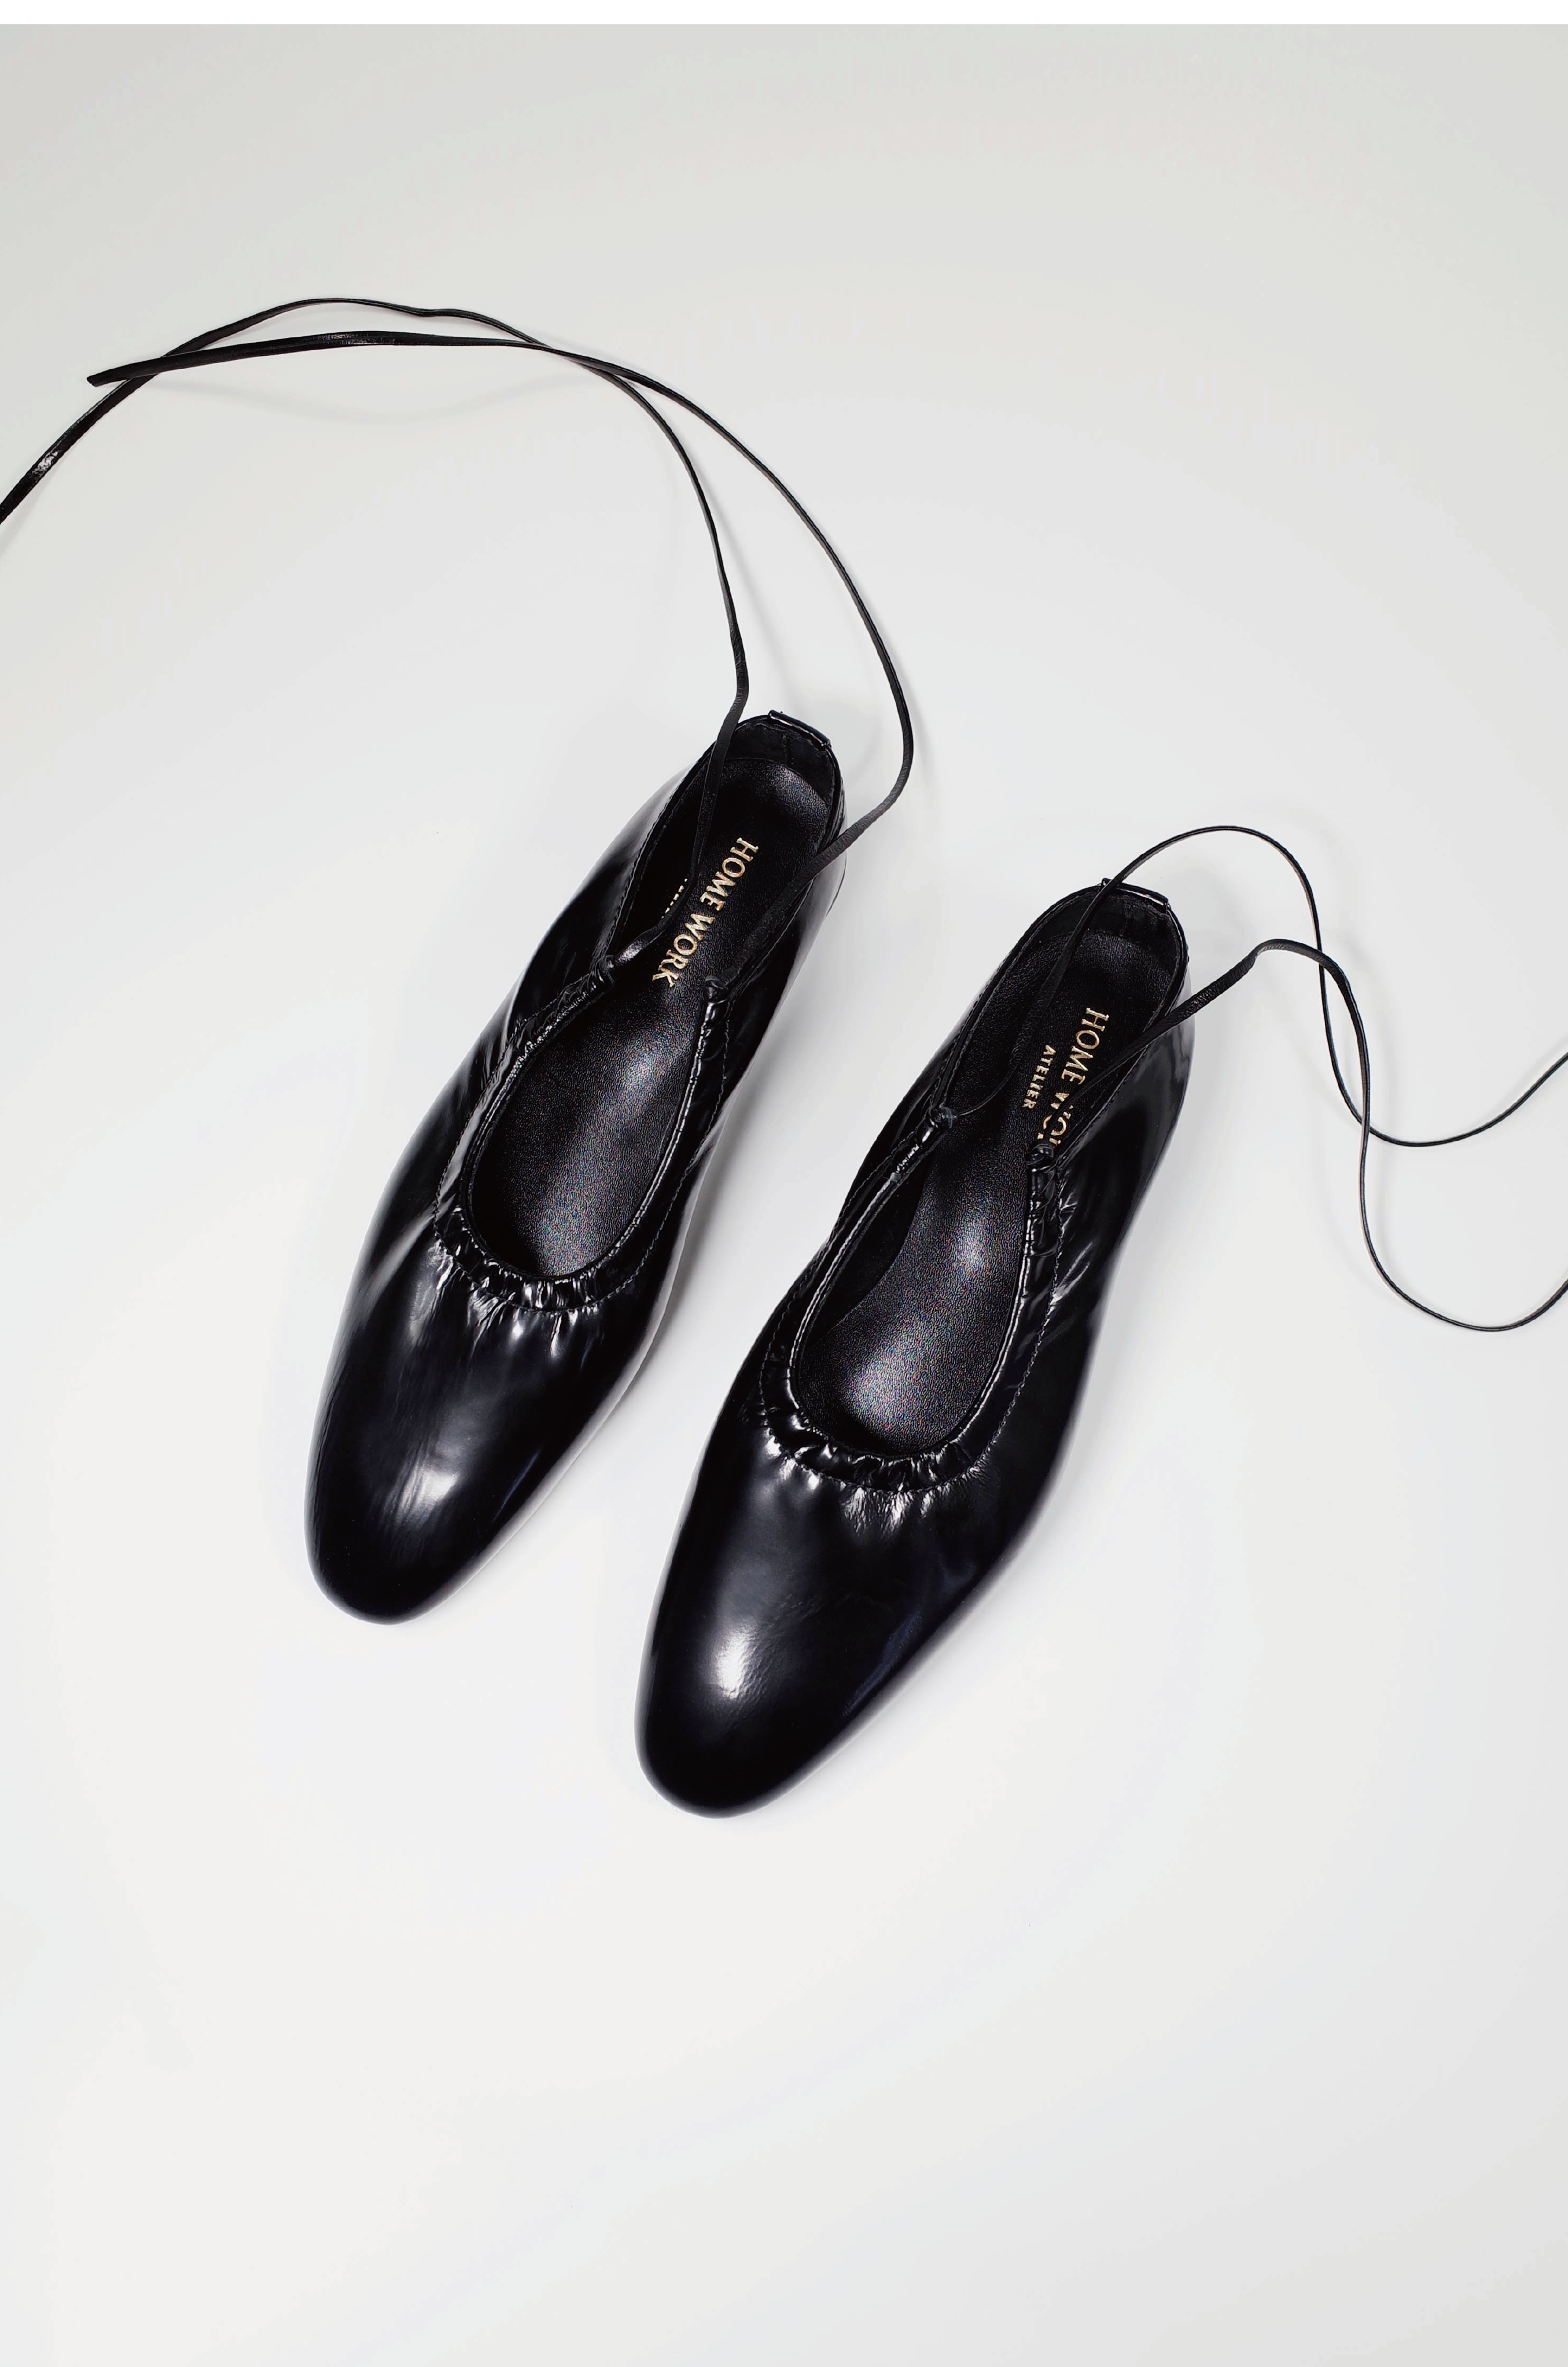 Craftsman Made Leather100% Ballet Shoes (Black)